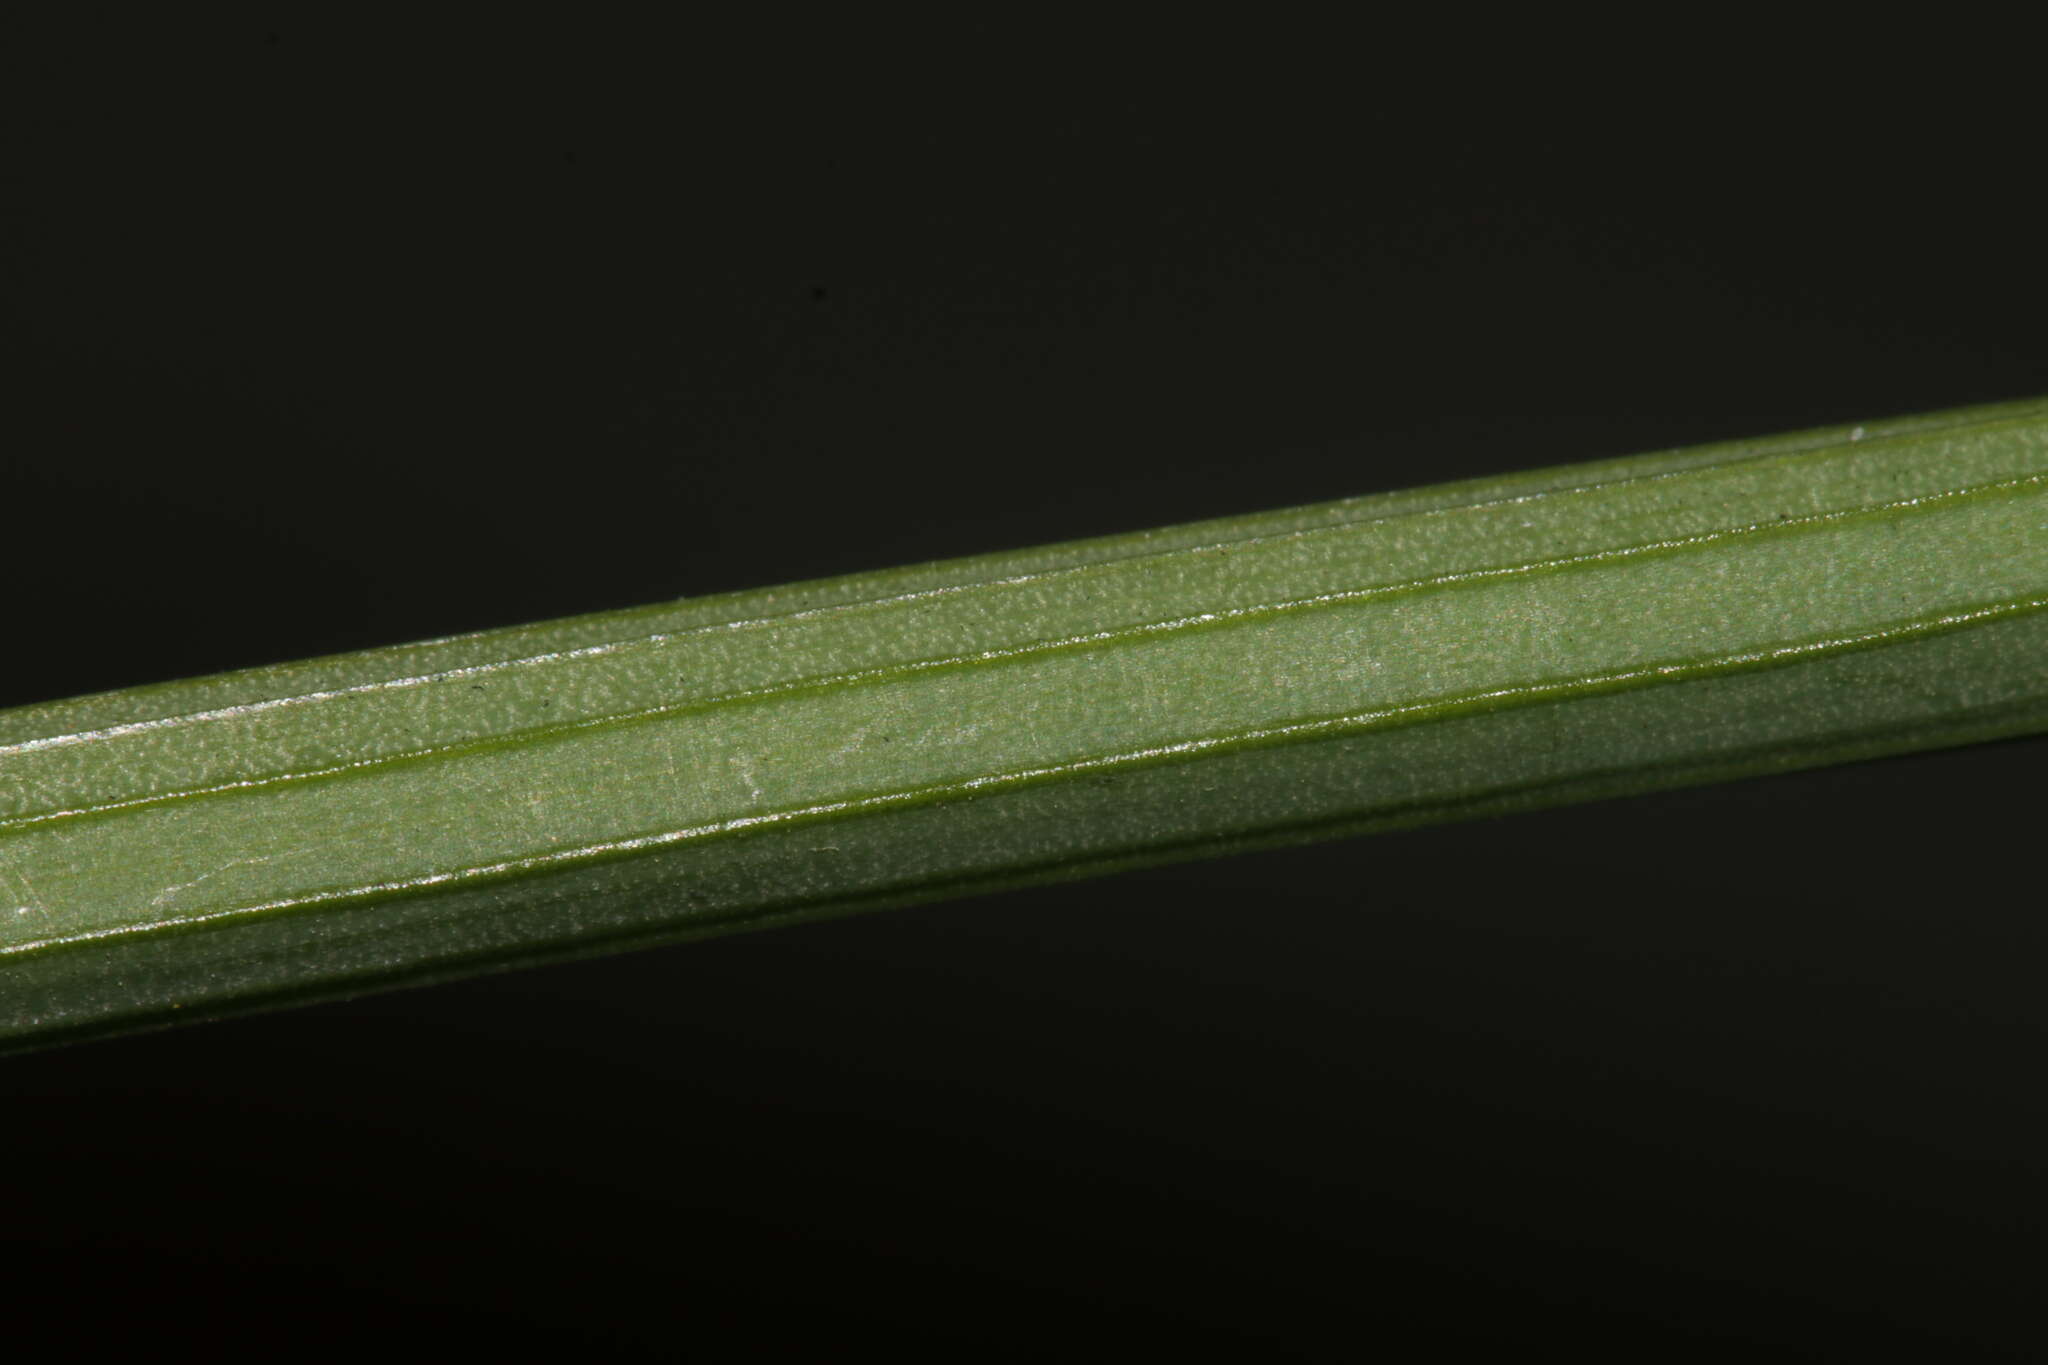 Image of Narcissus tazetta subsp. tazetta